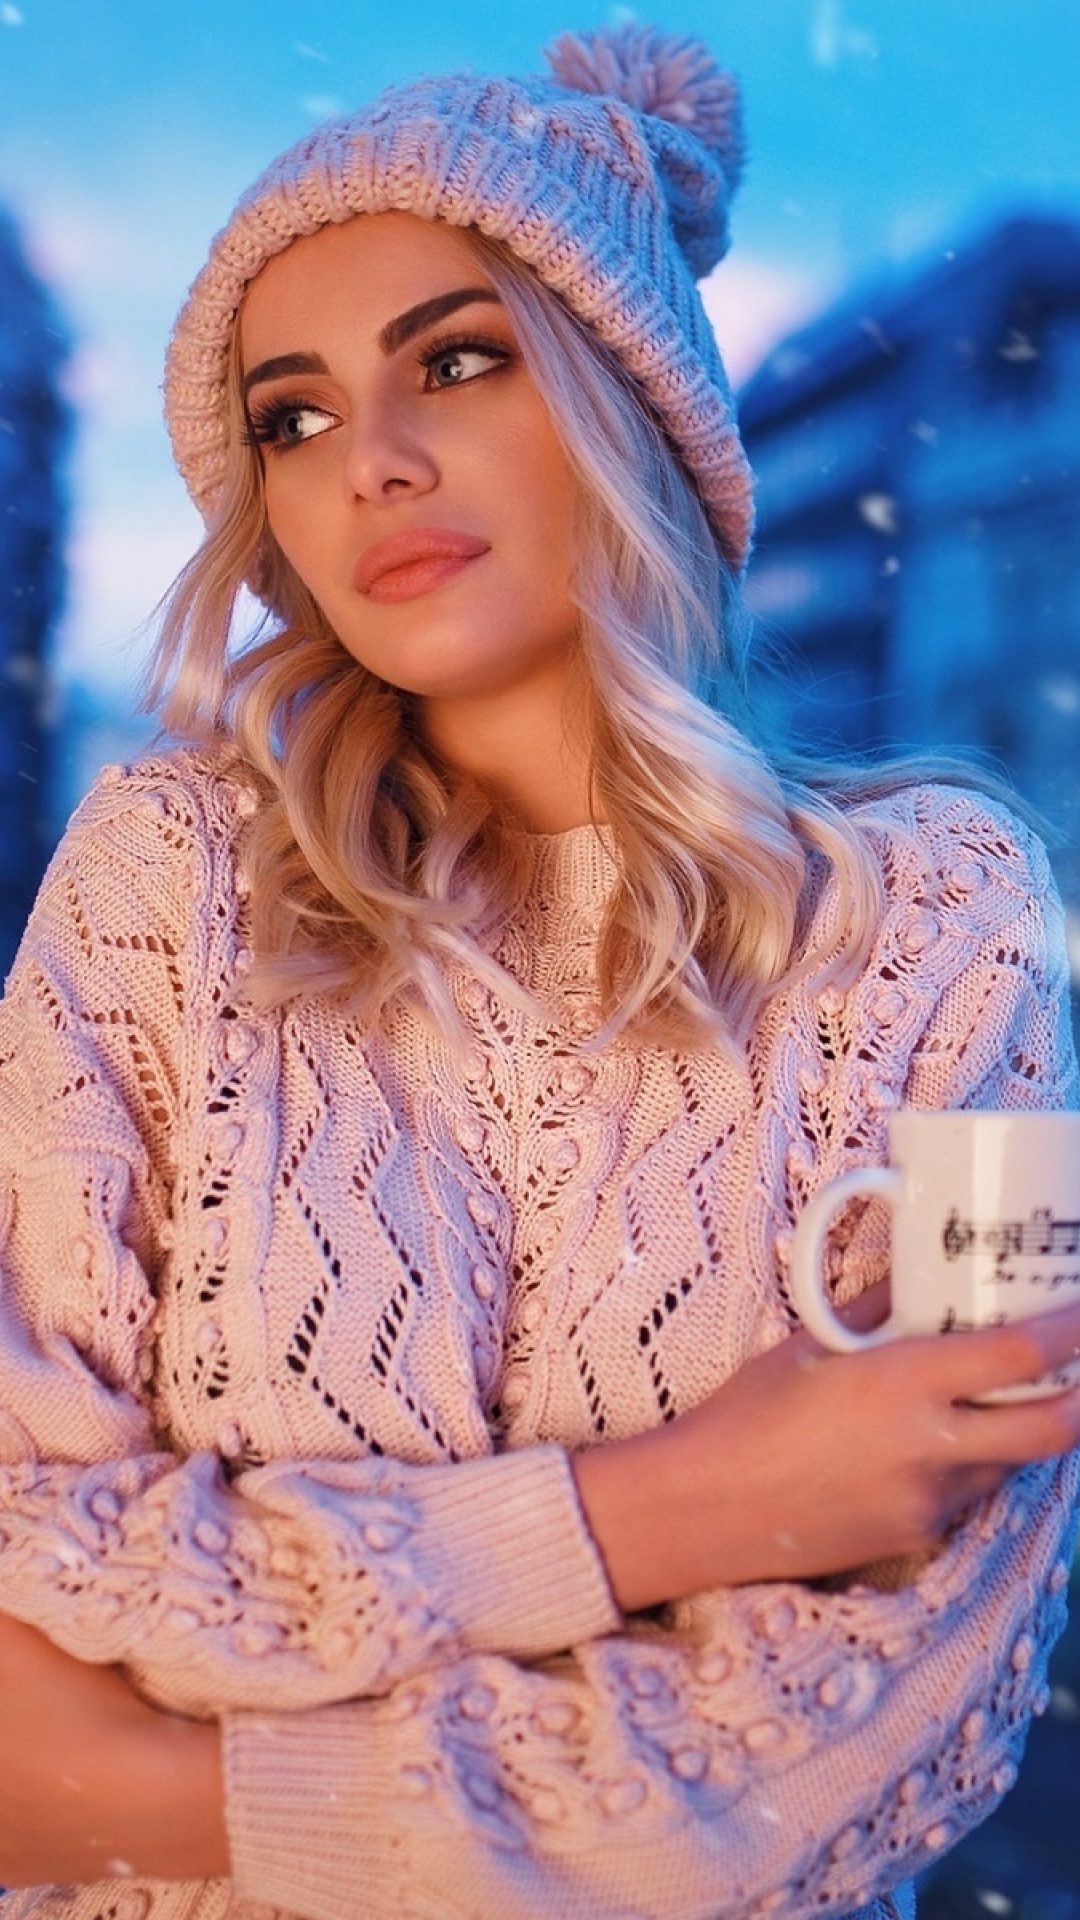 Winter stylish woman wallpaper 1080x1920